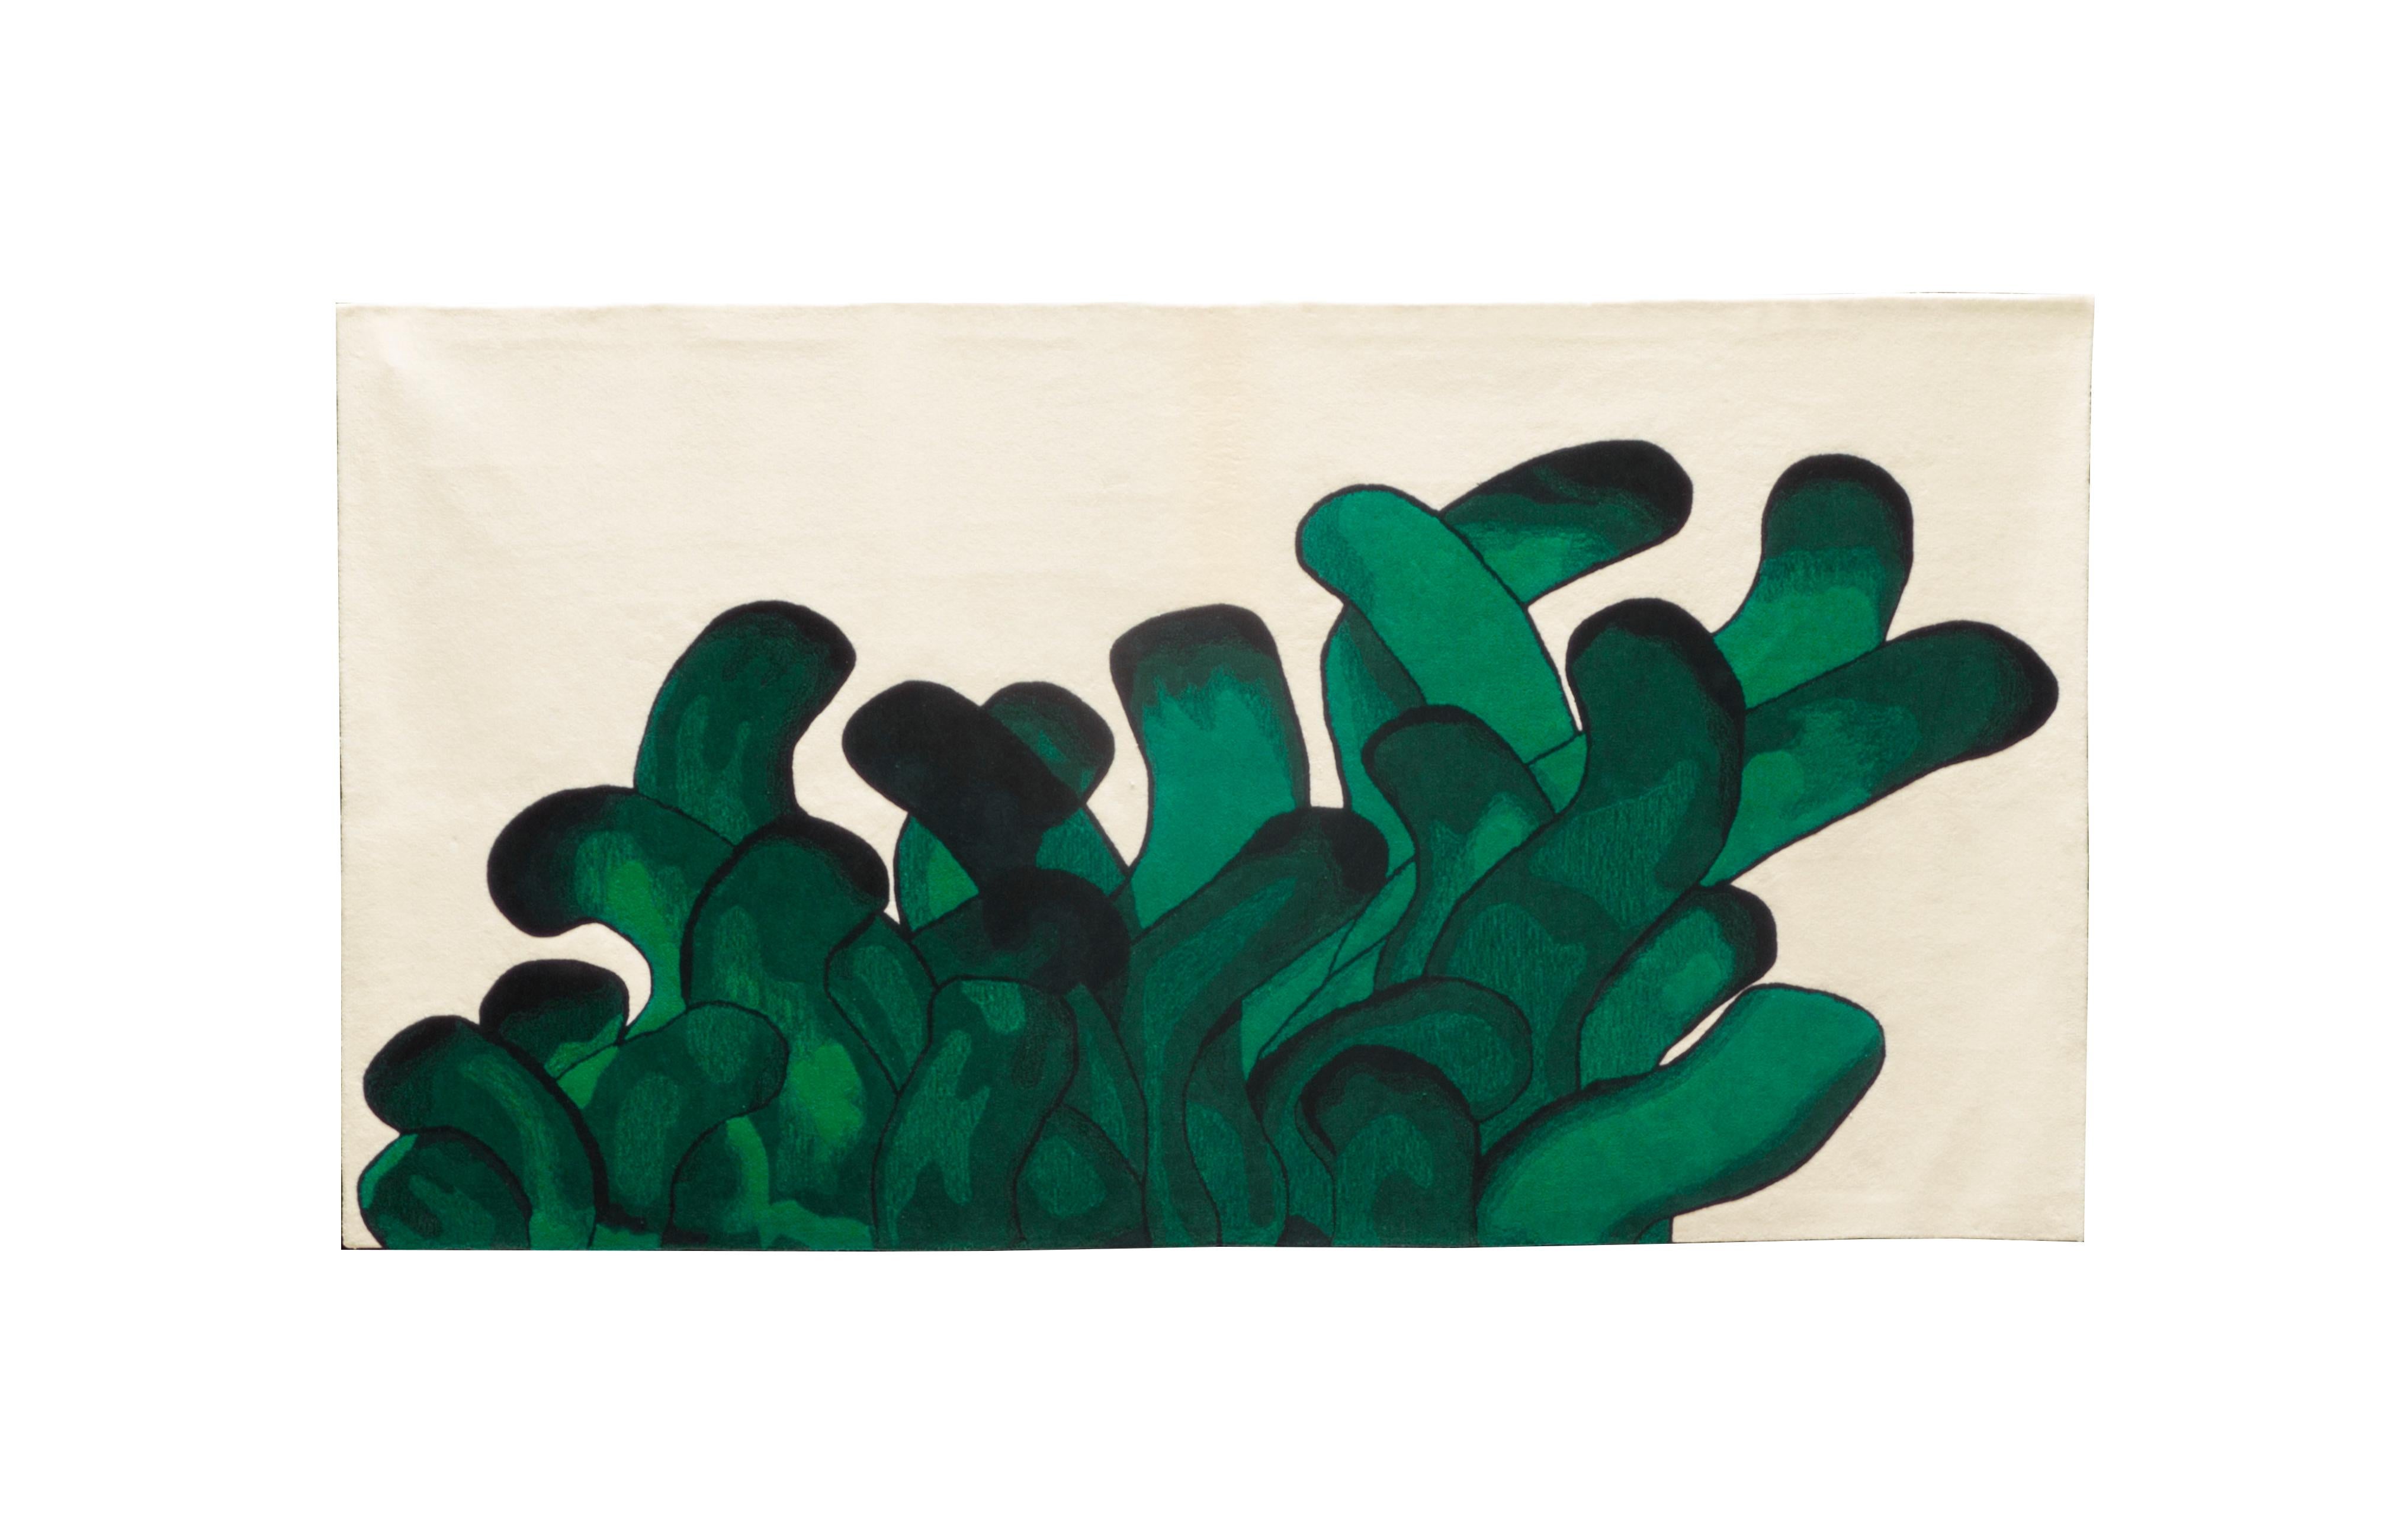 Grüner Anémone-Teppich François Dumas
Anemone ist ein Teppich, der von einem Gemälde inspiriert wurde, in dem die Pinselstriche die Bewegungen von Seeanemonen nachahmen. Der Teppich wird von Kunsthandwerkern in Portugal handgefertigt, die die Wolle